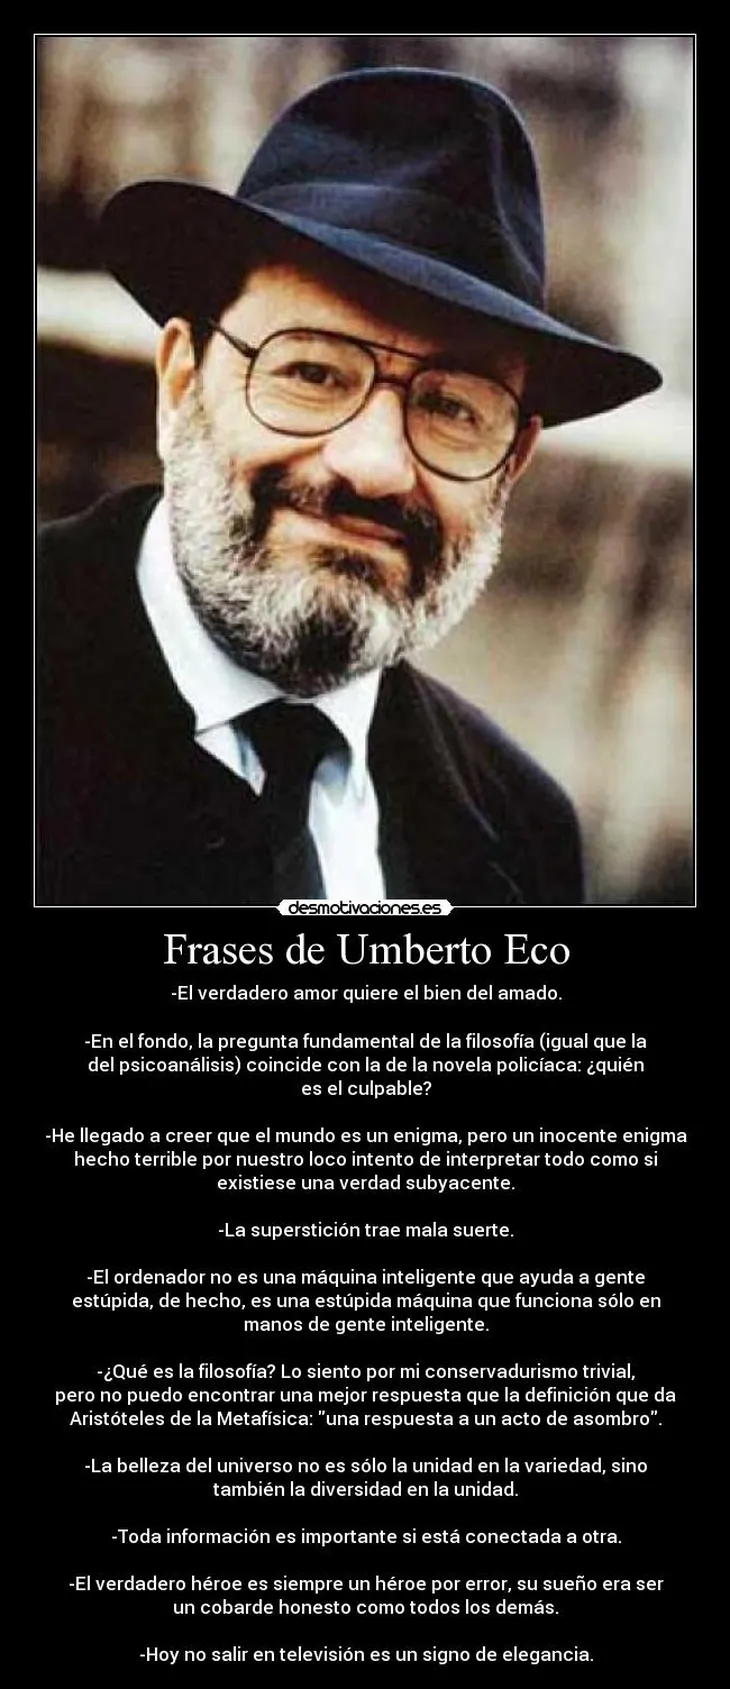 3883 109345 - Umberto Eco Frases